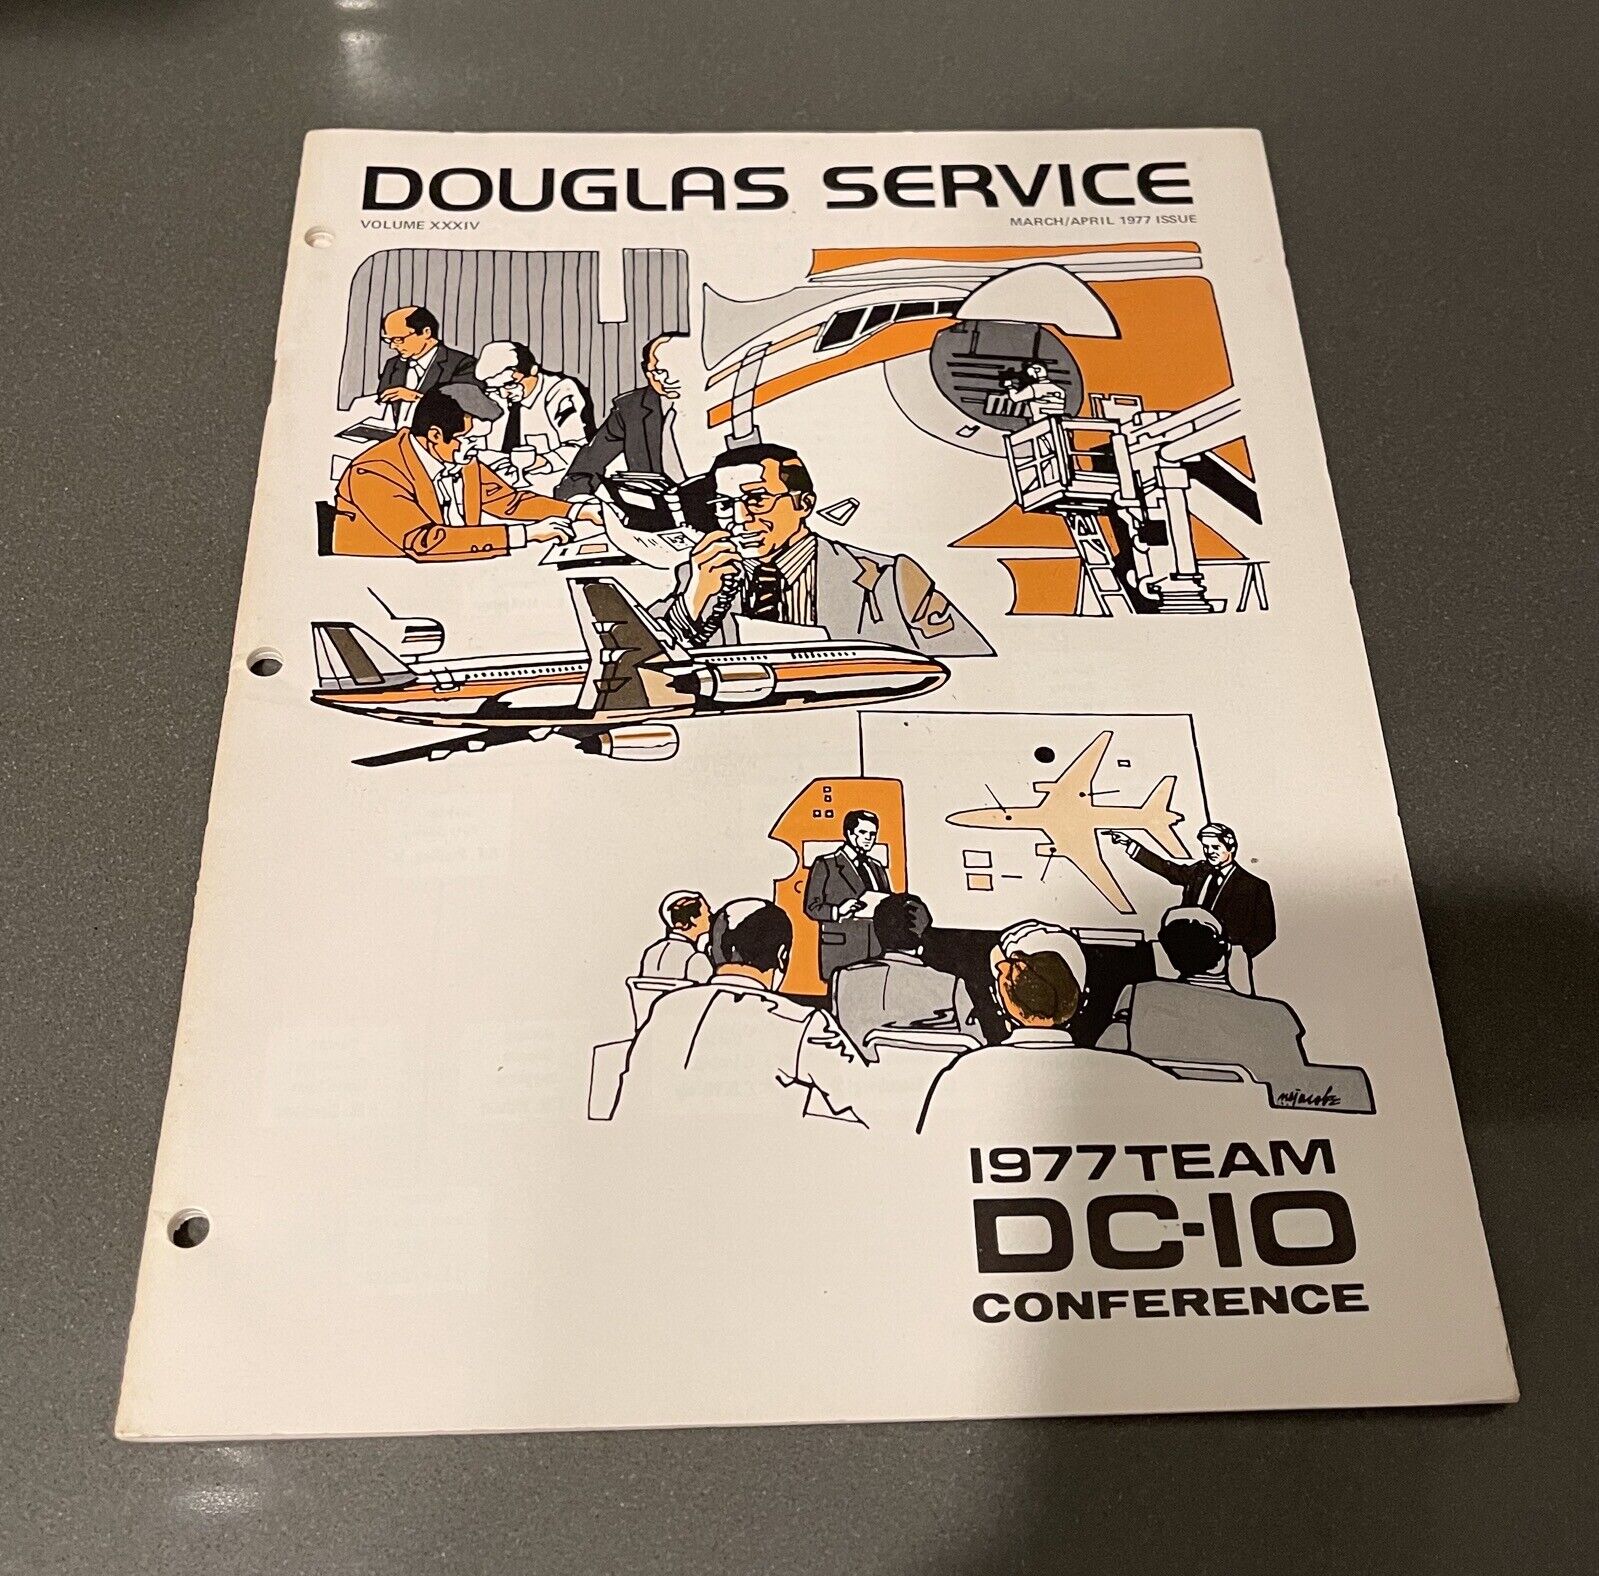 McDonnell Douglas Service Newsletter March/April 1977 DC-10 Conference EUC